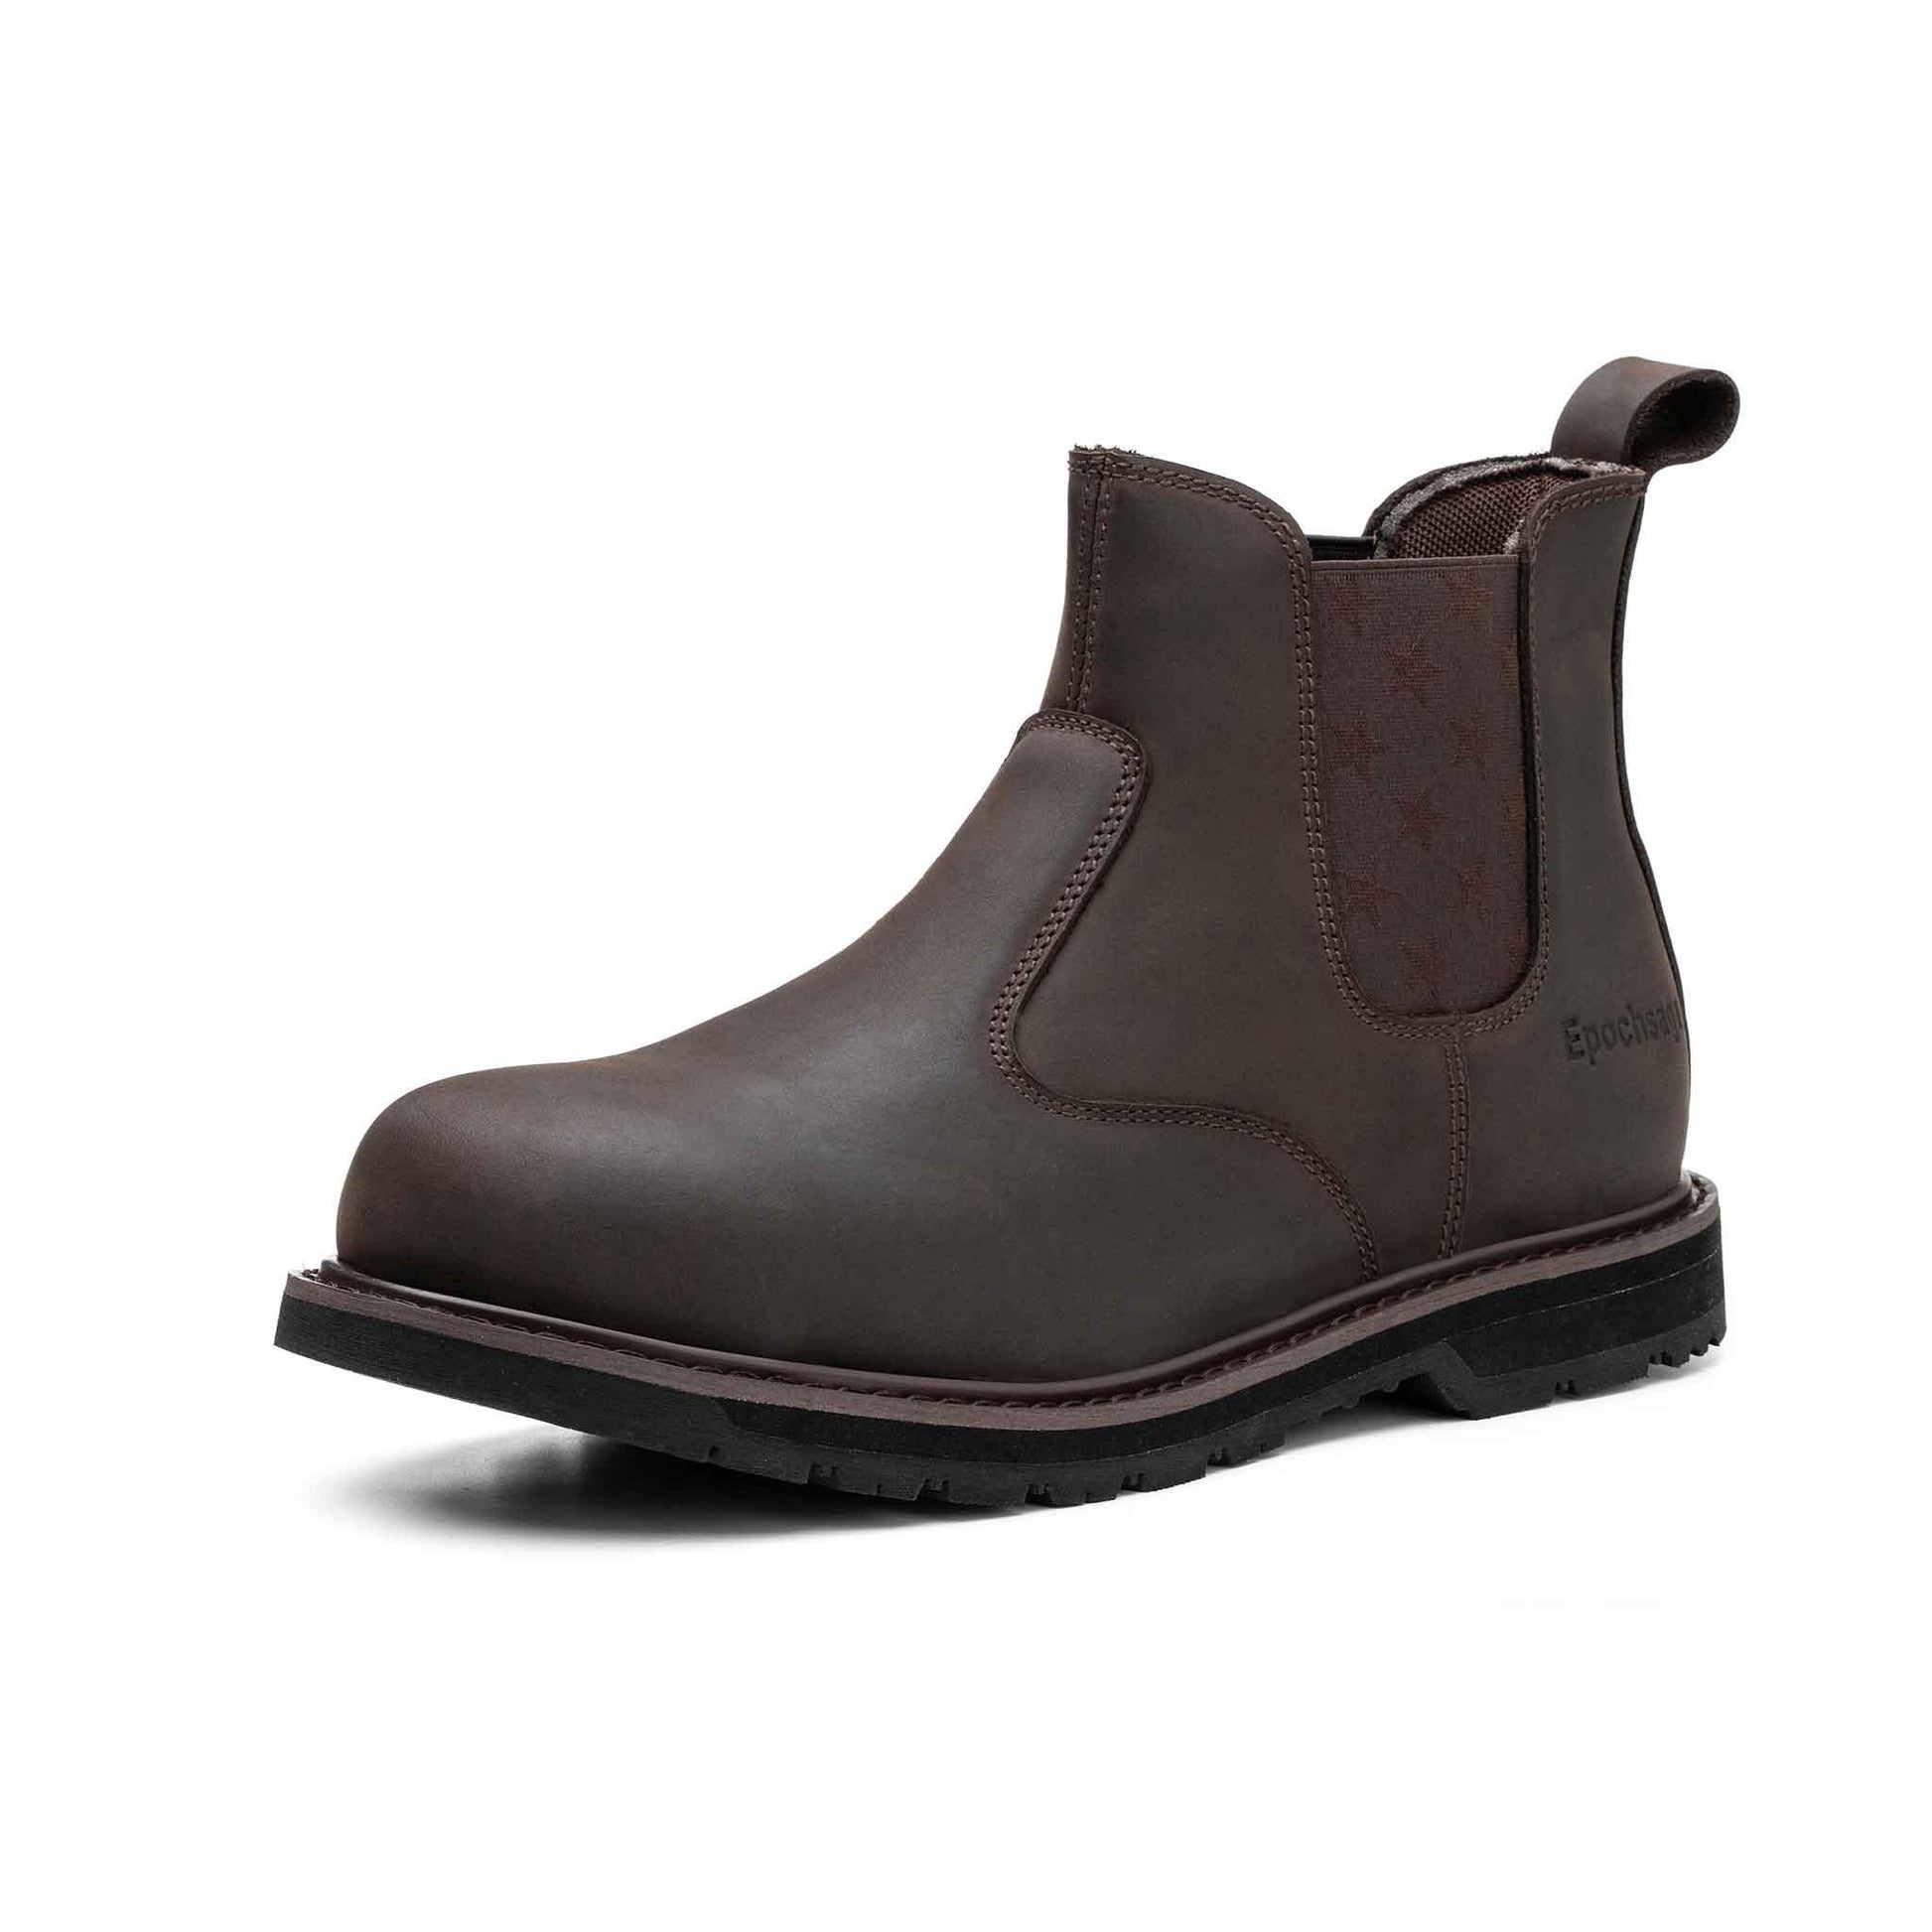 Women's Steel Toe Chelsea Boots - Rubber Sole | H003 - USINE PRO Footwear